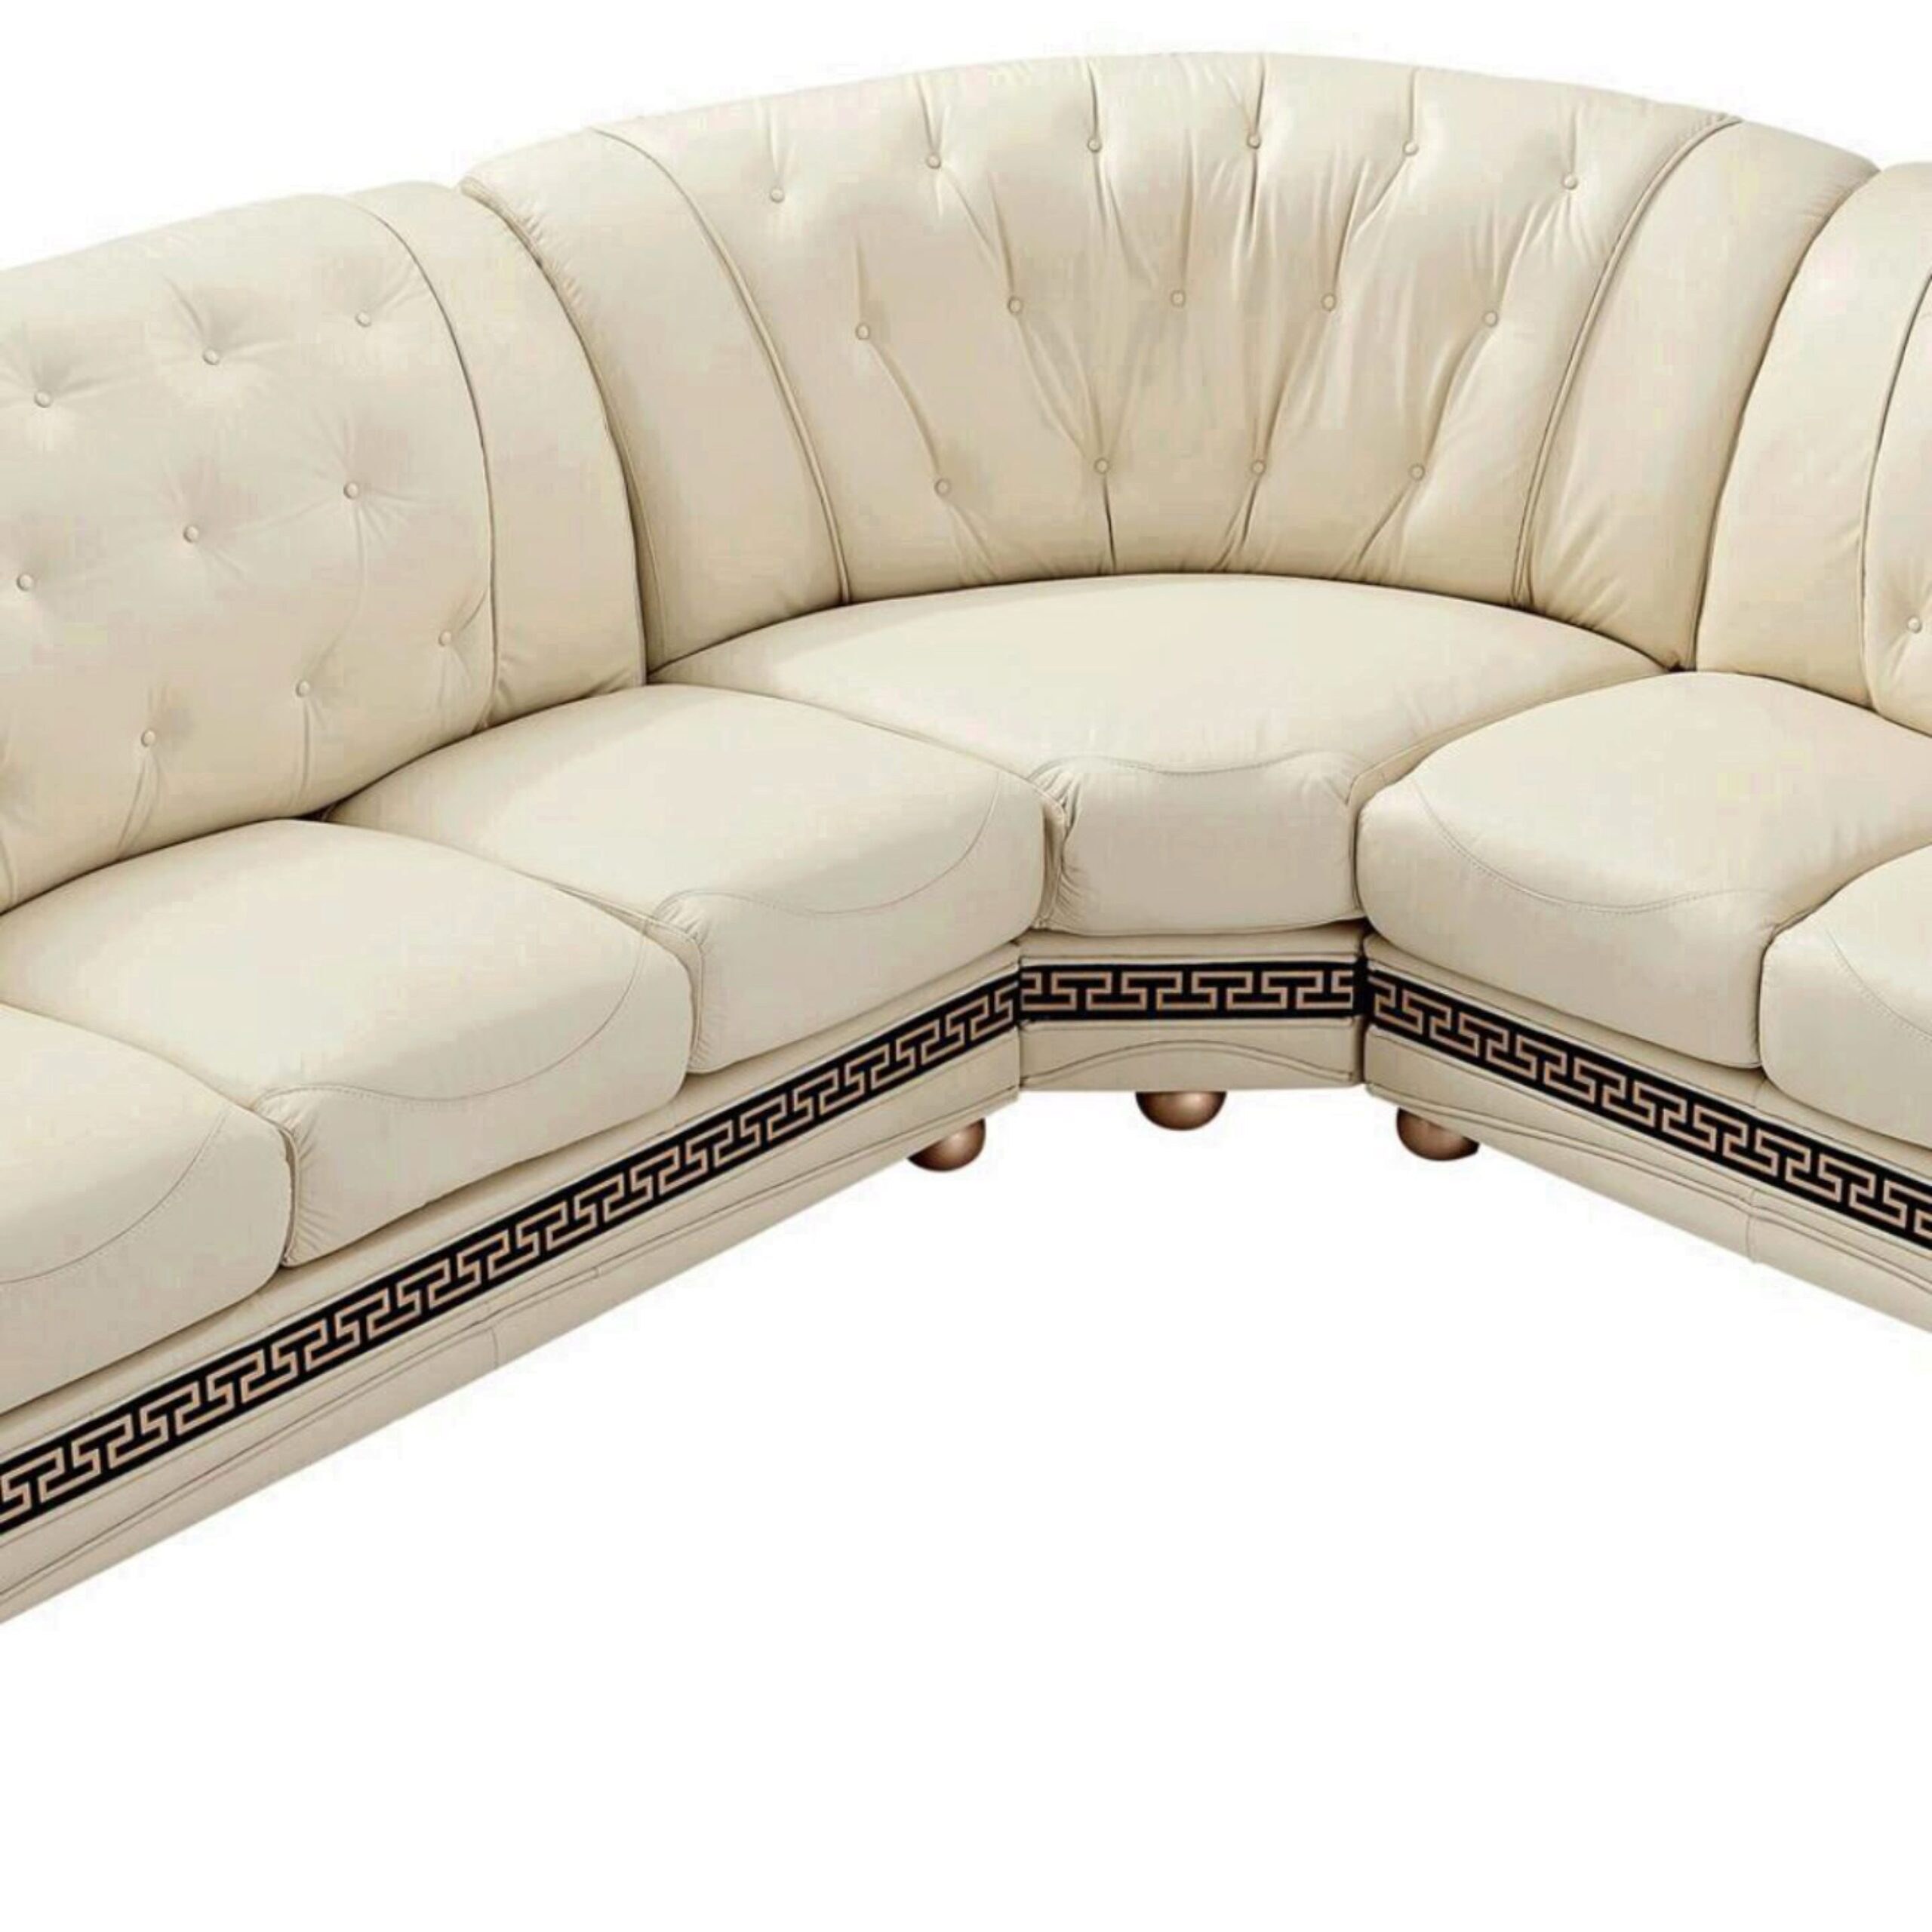 Купить угловой диван недорого от производителя распродажа. Угловой диван Виконт 2. Кожаный диван хофф. Диван угловой равносторонний 2200 2200.